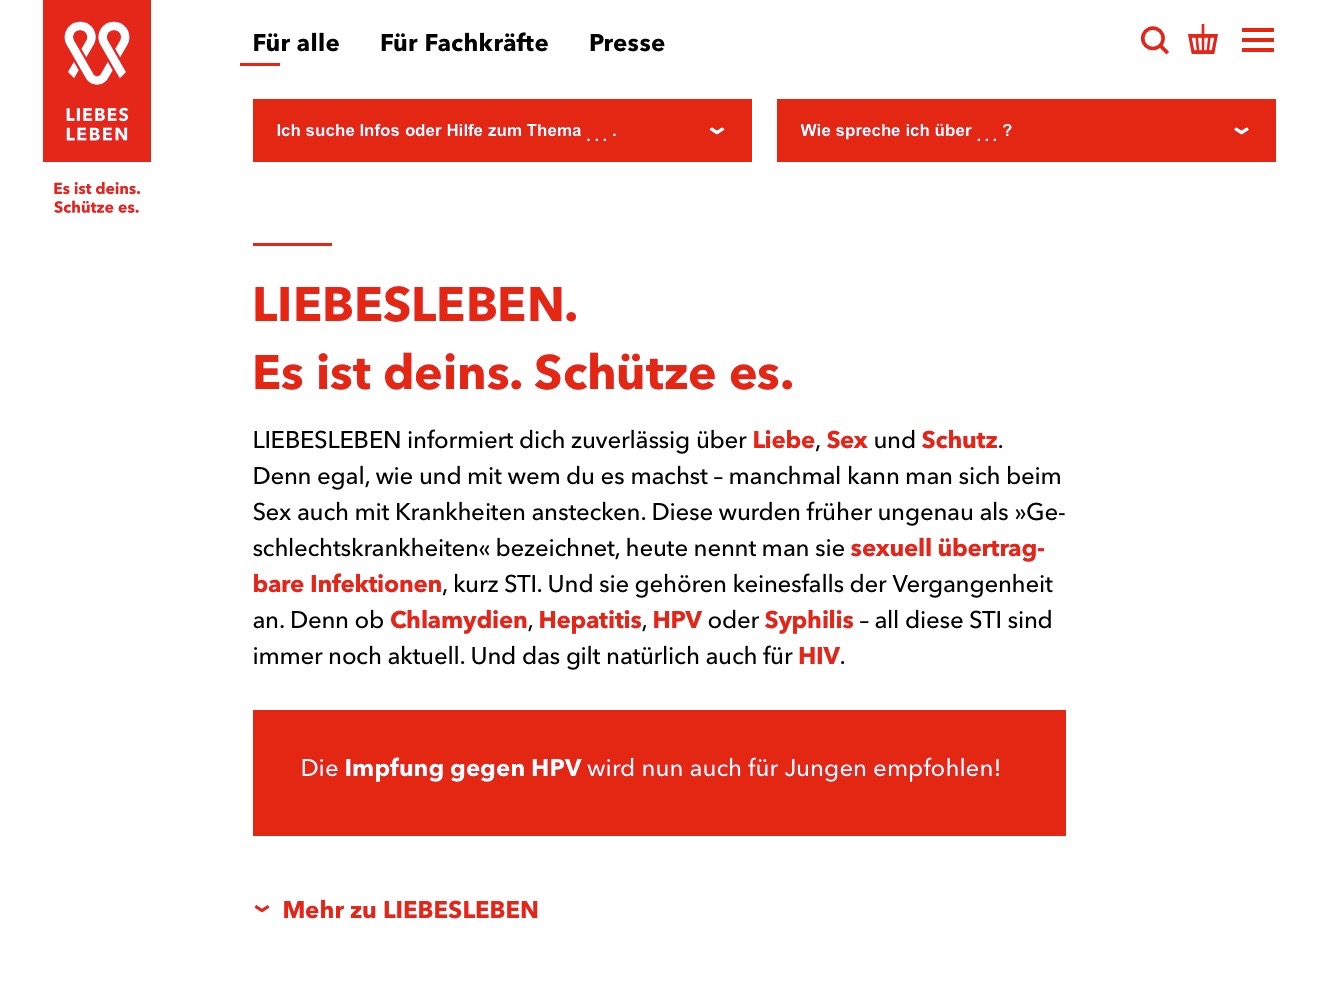 alt="Abbildung der Internetseite www.liebesleben.de"